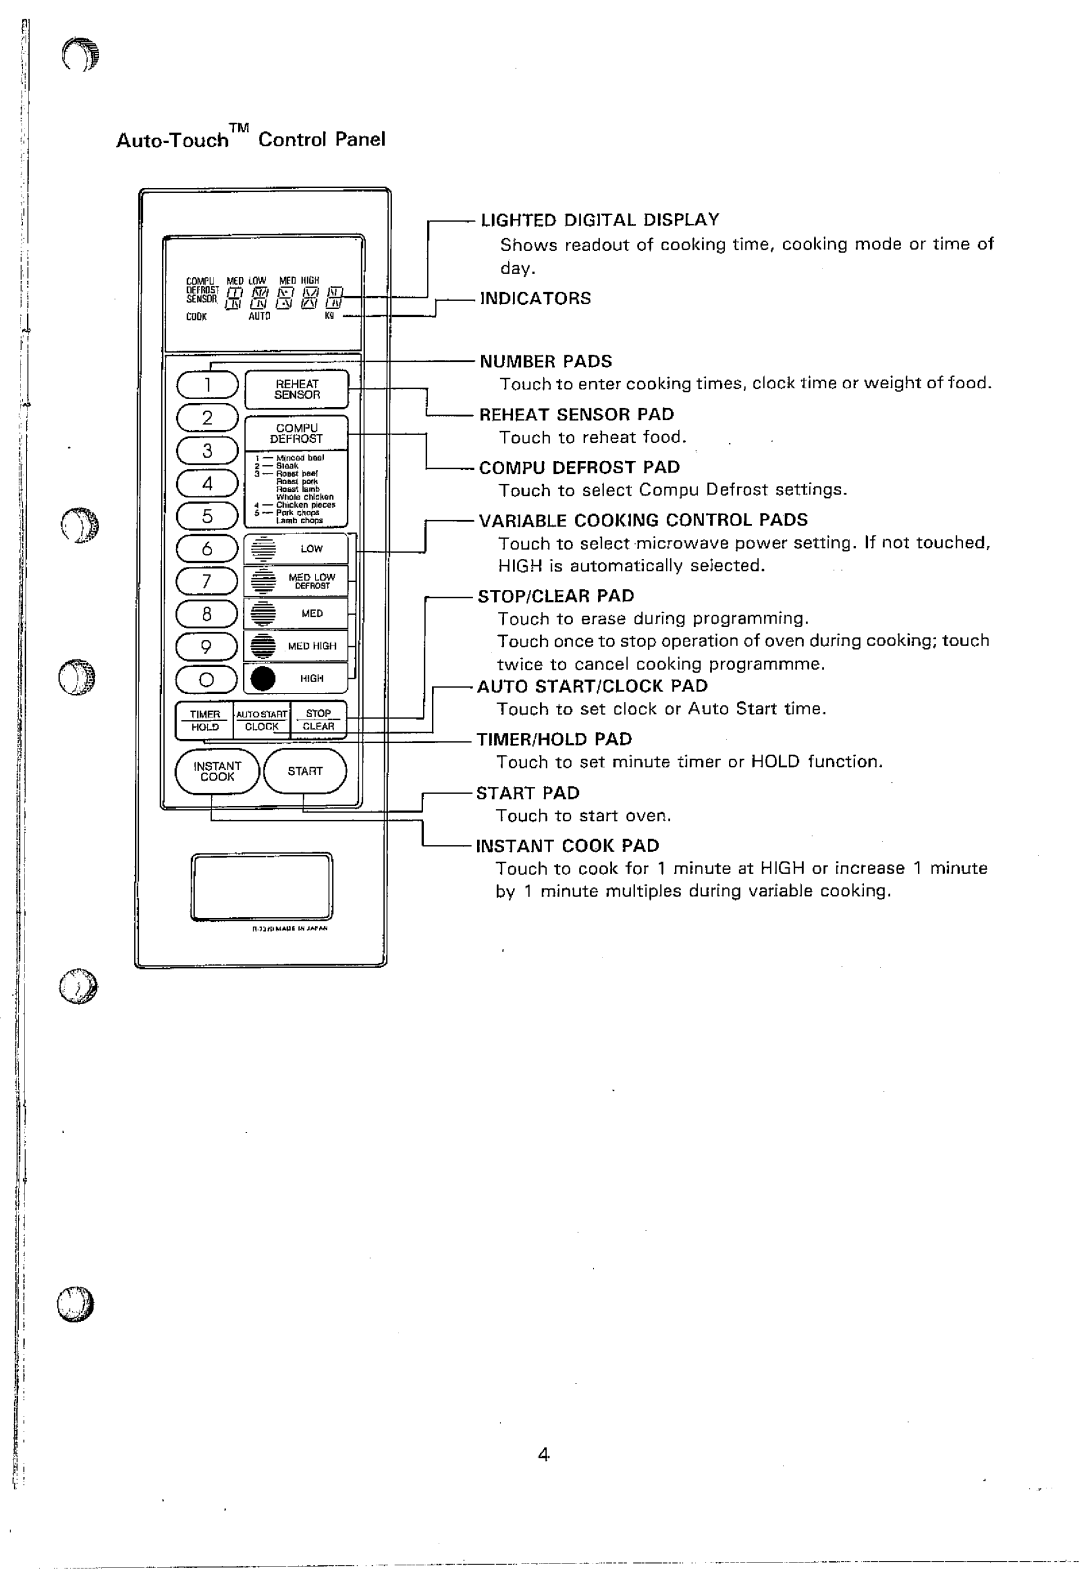 Sharp R-7370 manual 